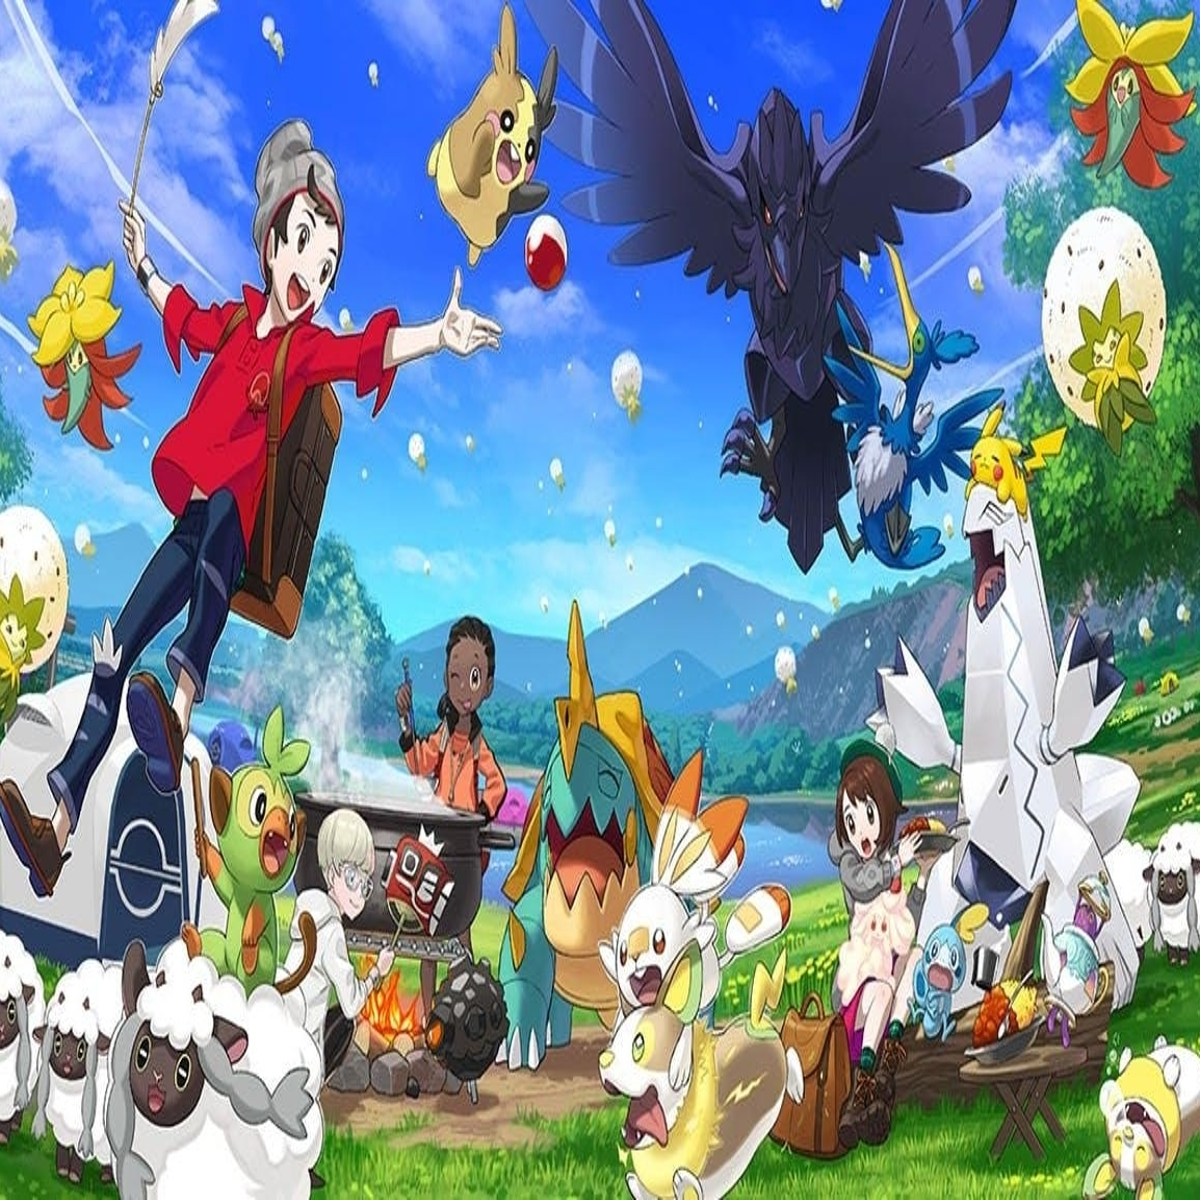 Pokémon Espada y Escudo: fecha de lanzamiento, Pokémons y más